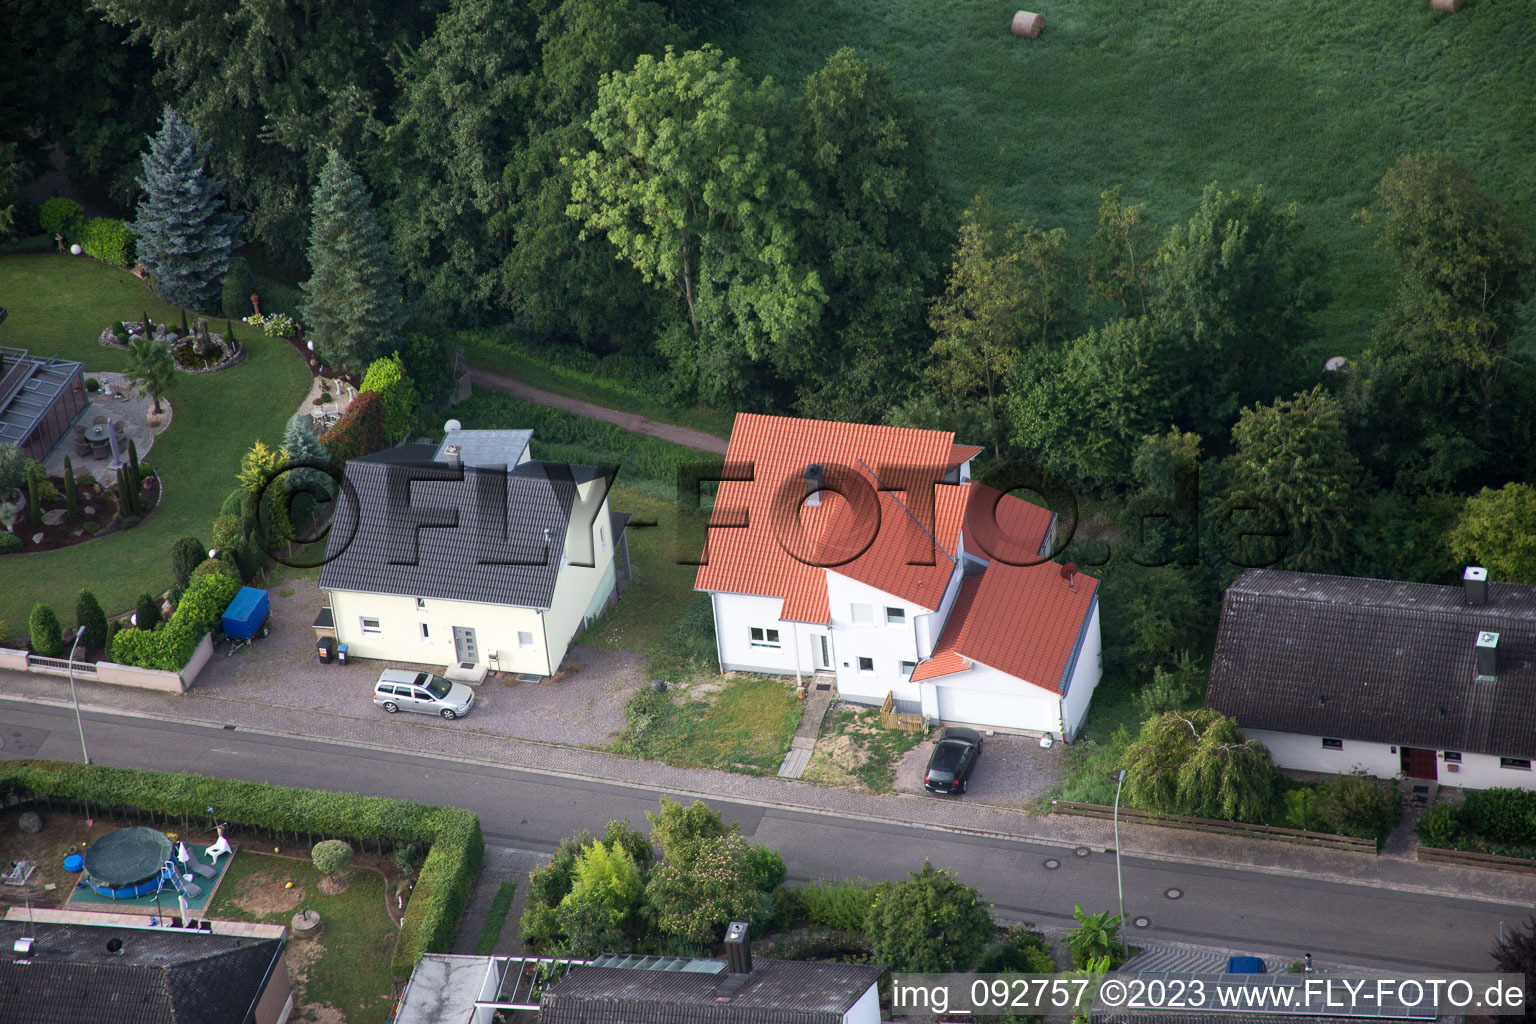 Quartier Billigheim in Billigheim-Ingenheim dans le département Rhénanie-Palatinat, Allemagne vu d'un drone